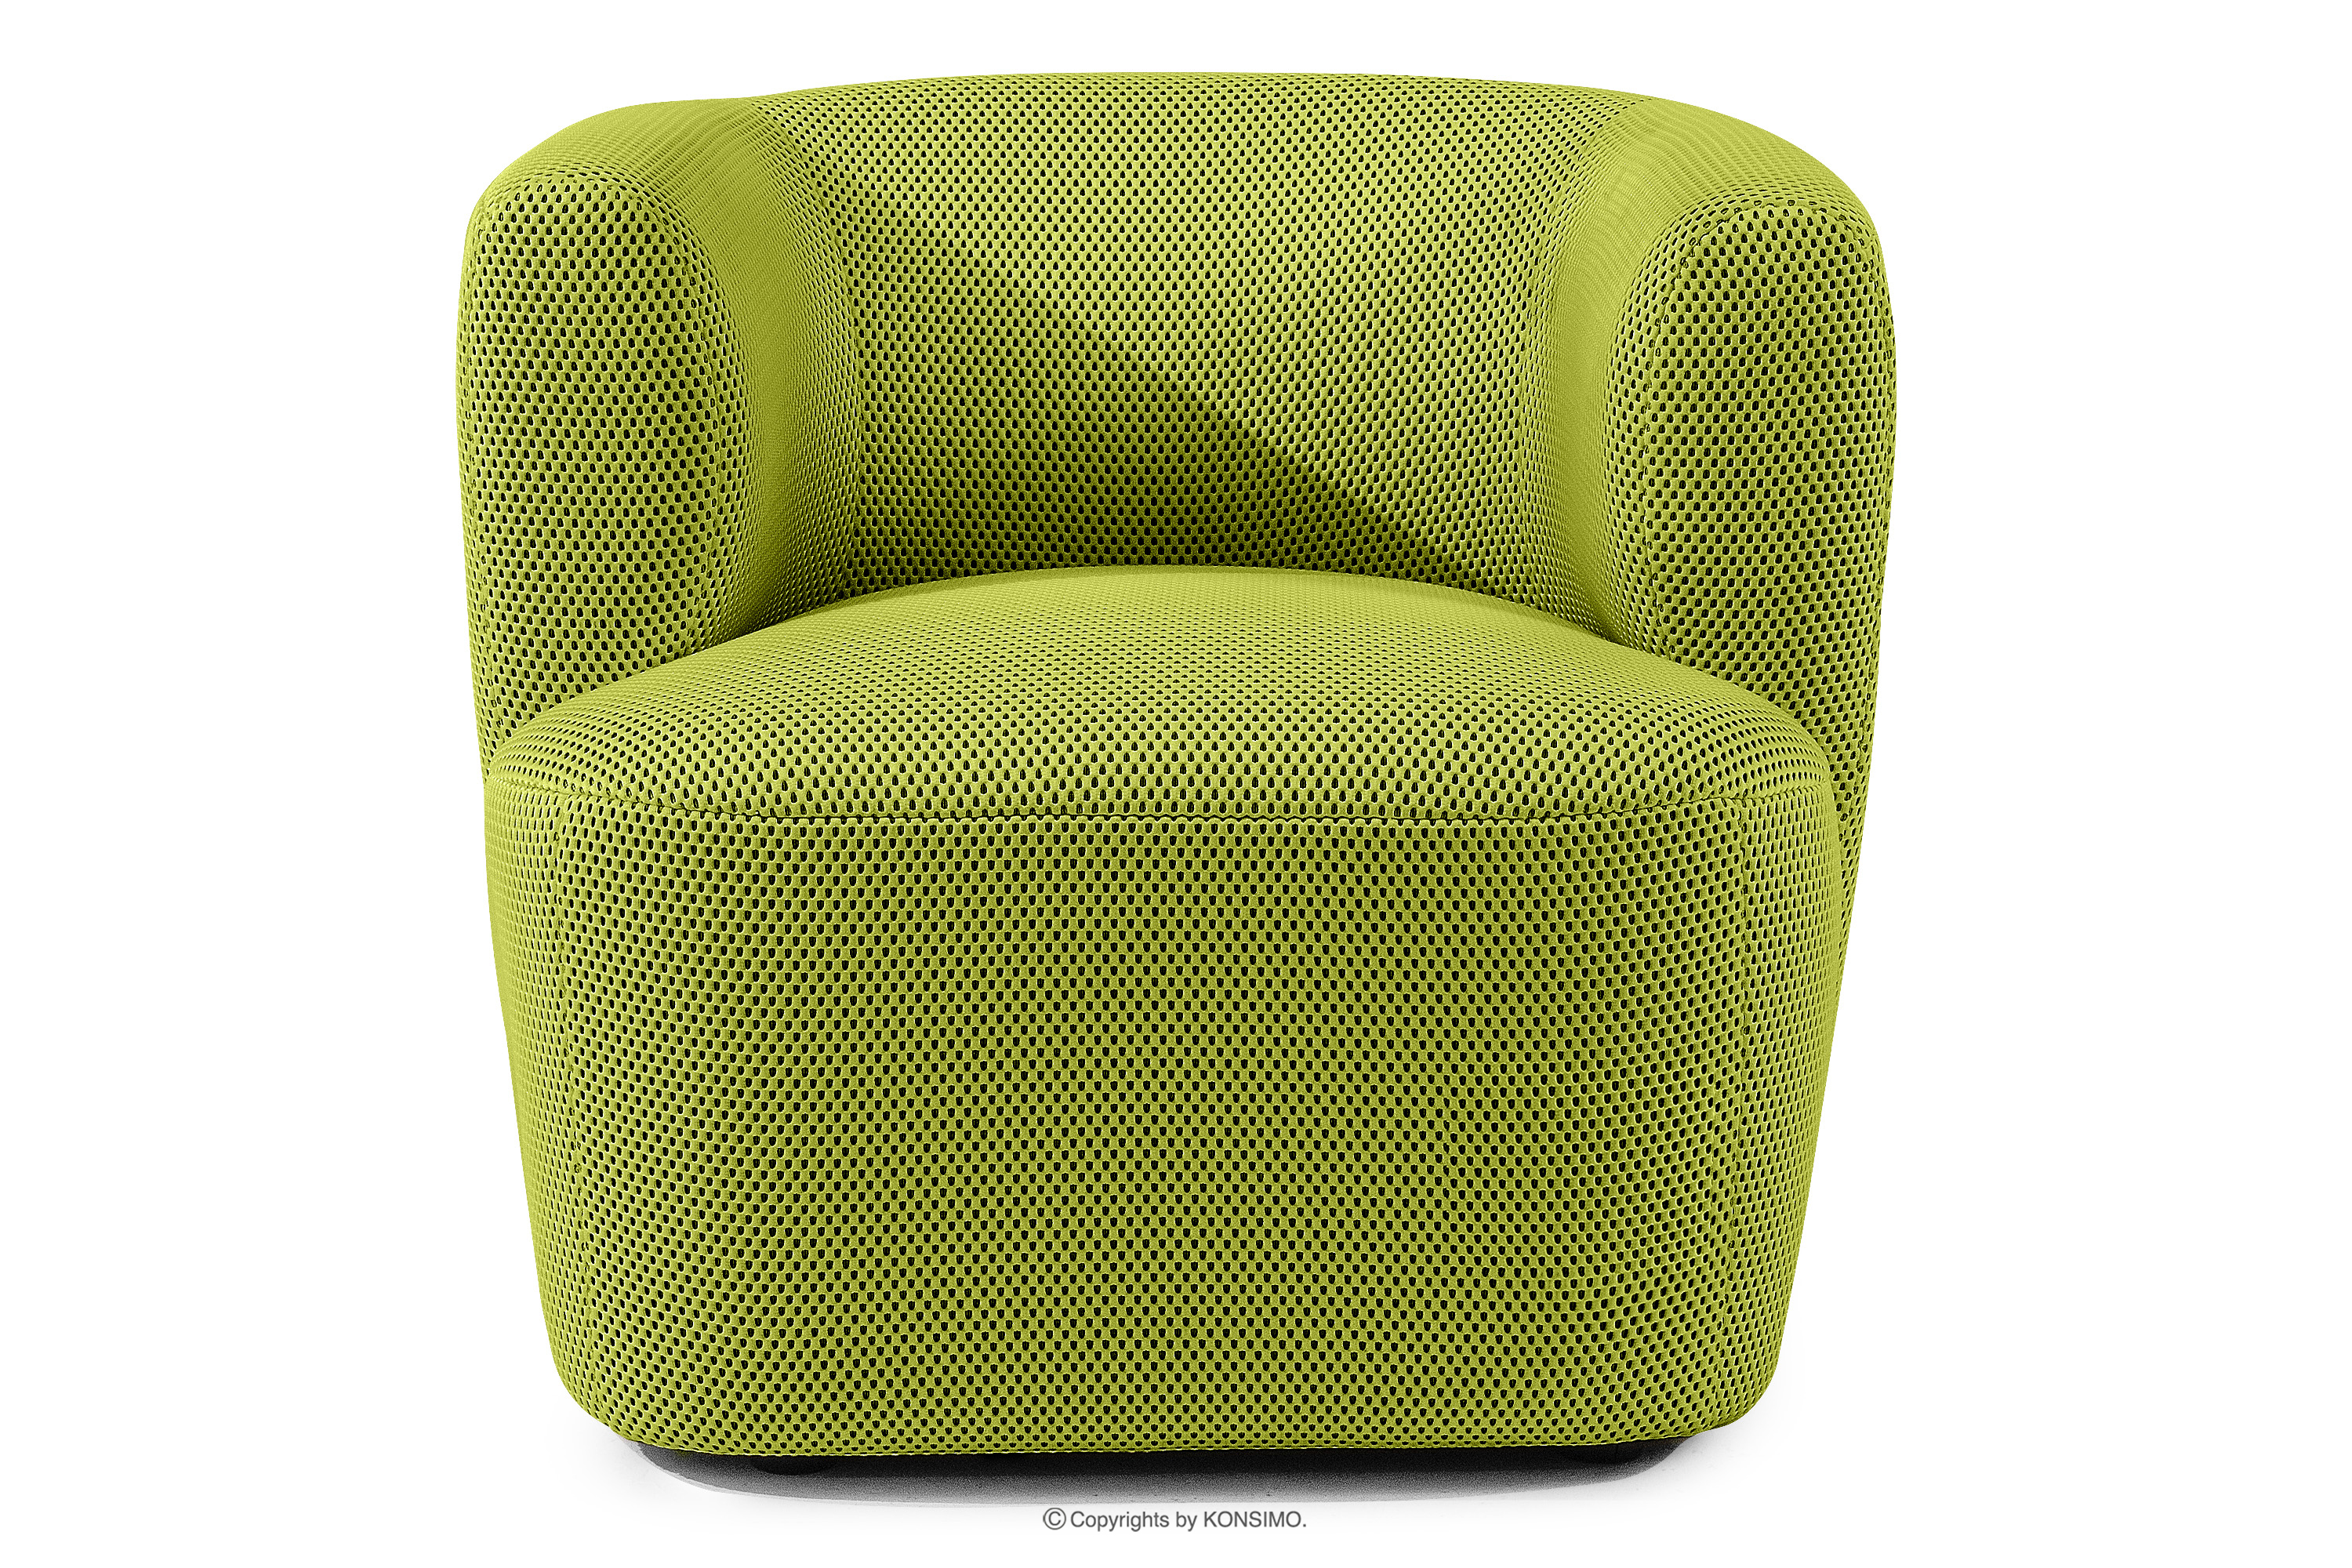 Nowoczesny fotel w tkaninie 3d zielony